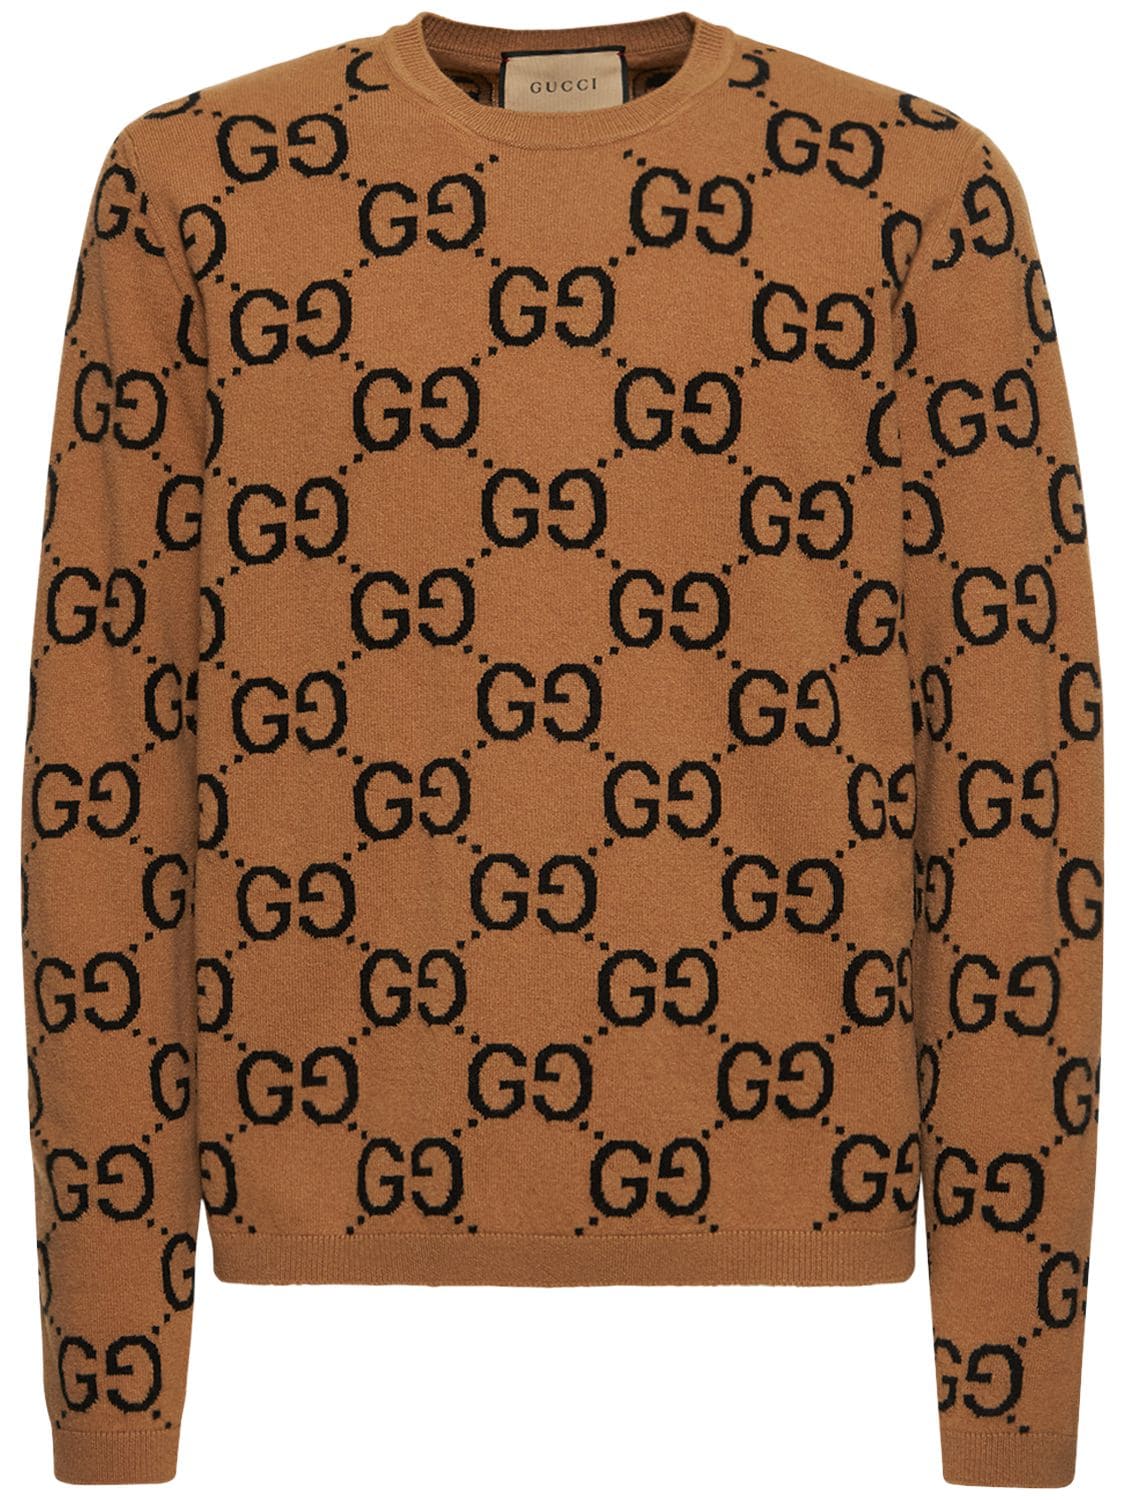 Image of Gg Wool Knit Sweater